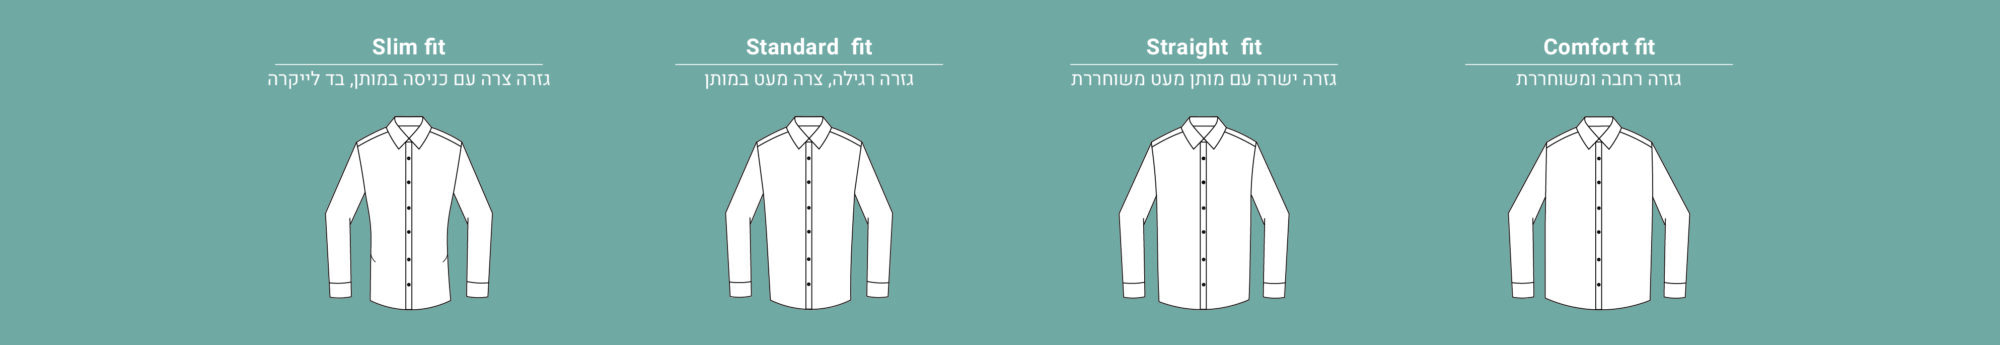 men_shirts_pattern-01.jpg